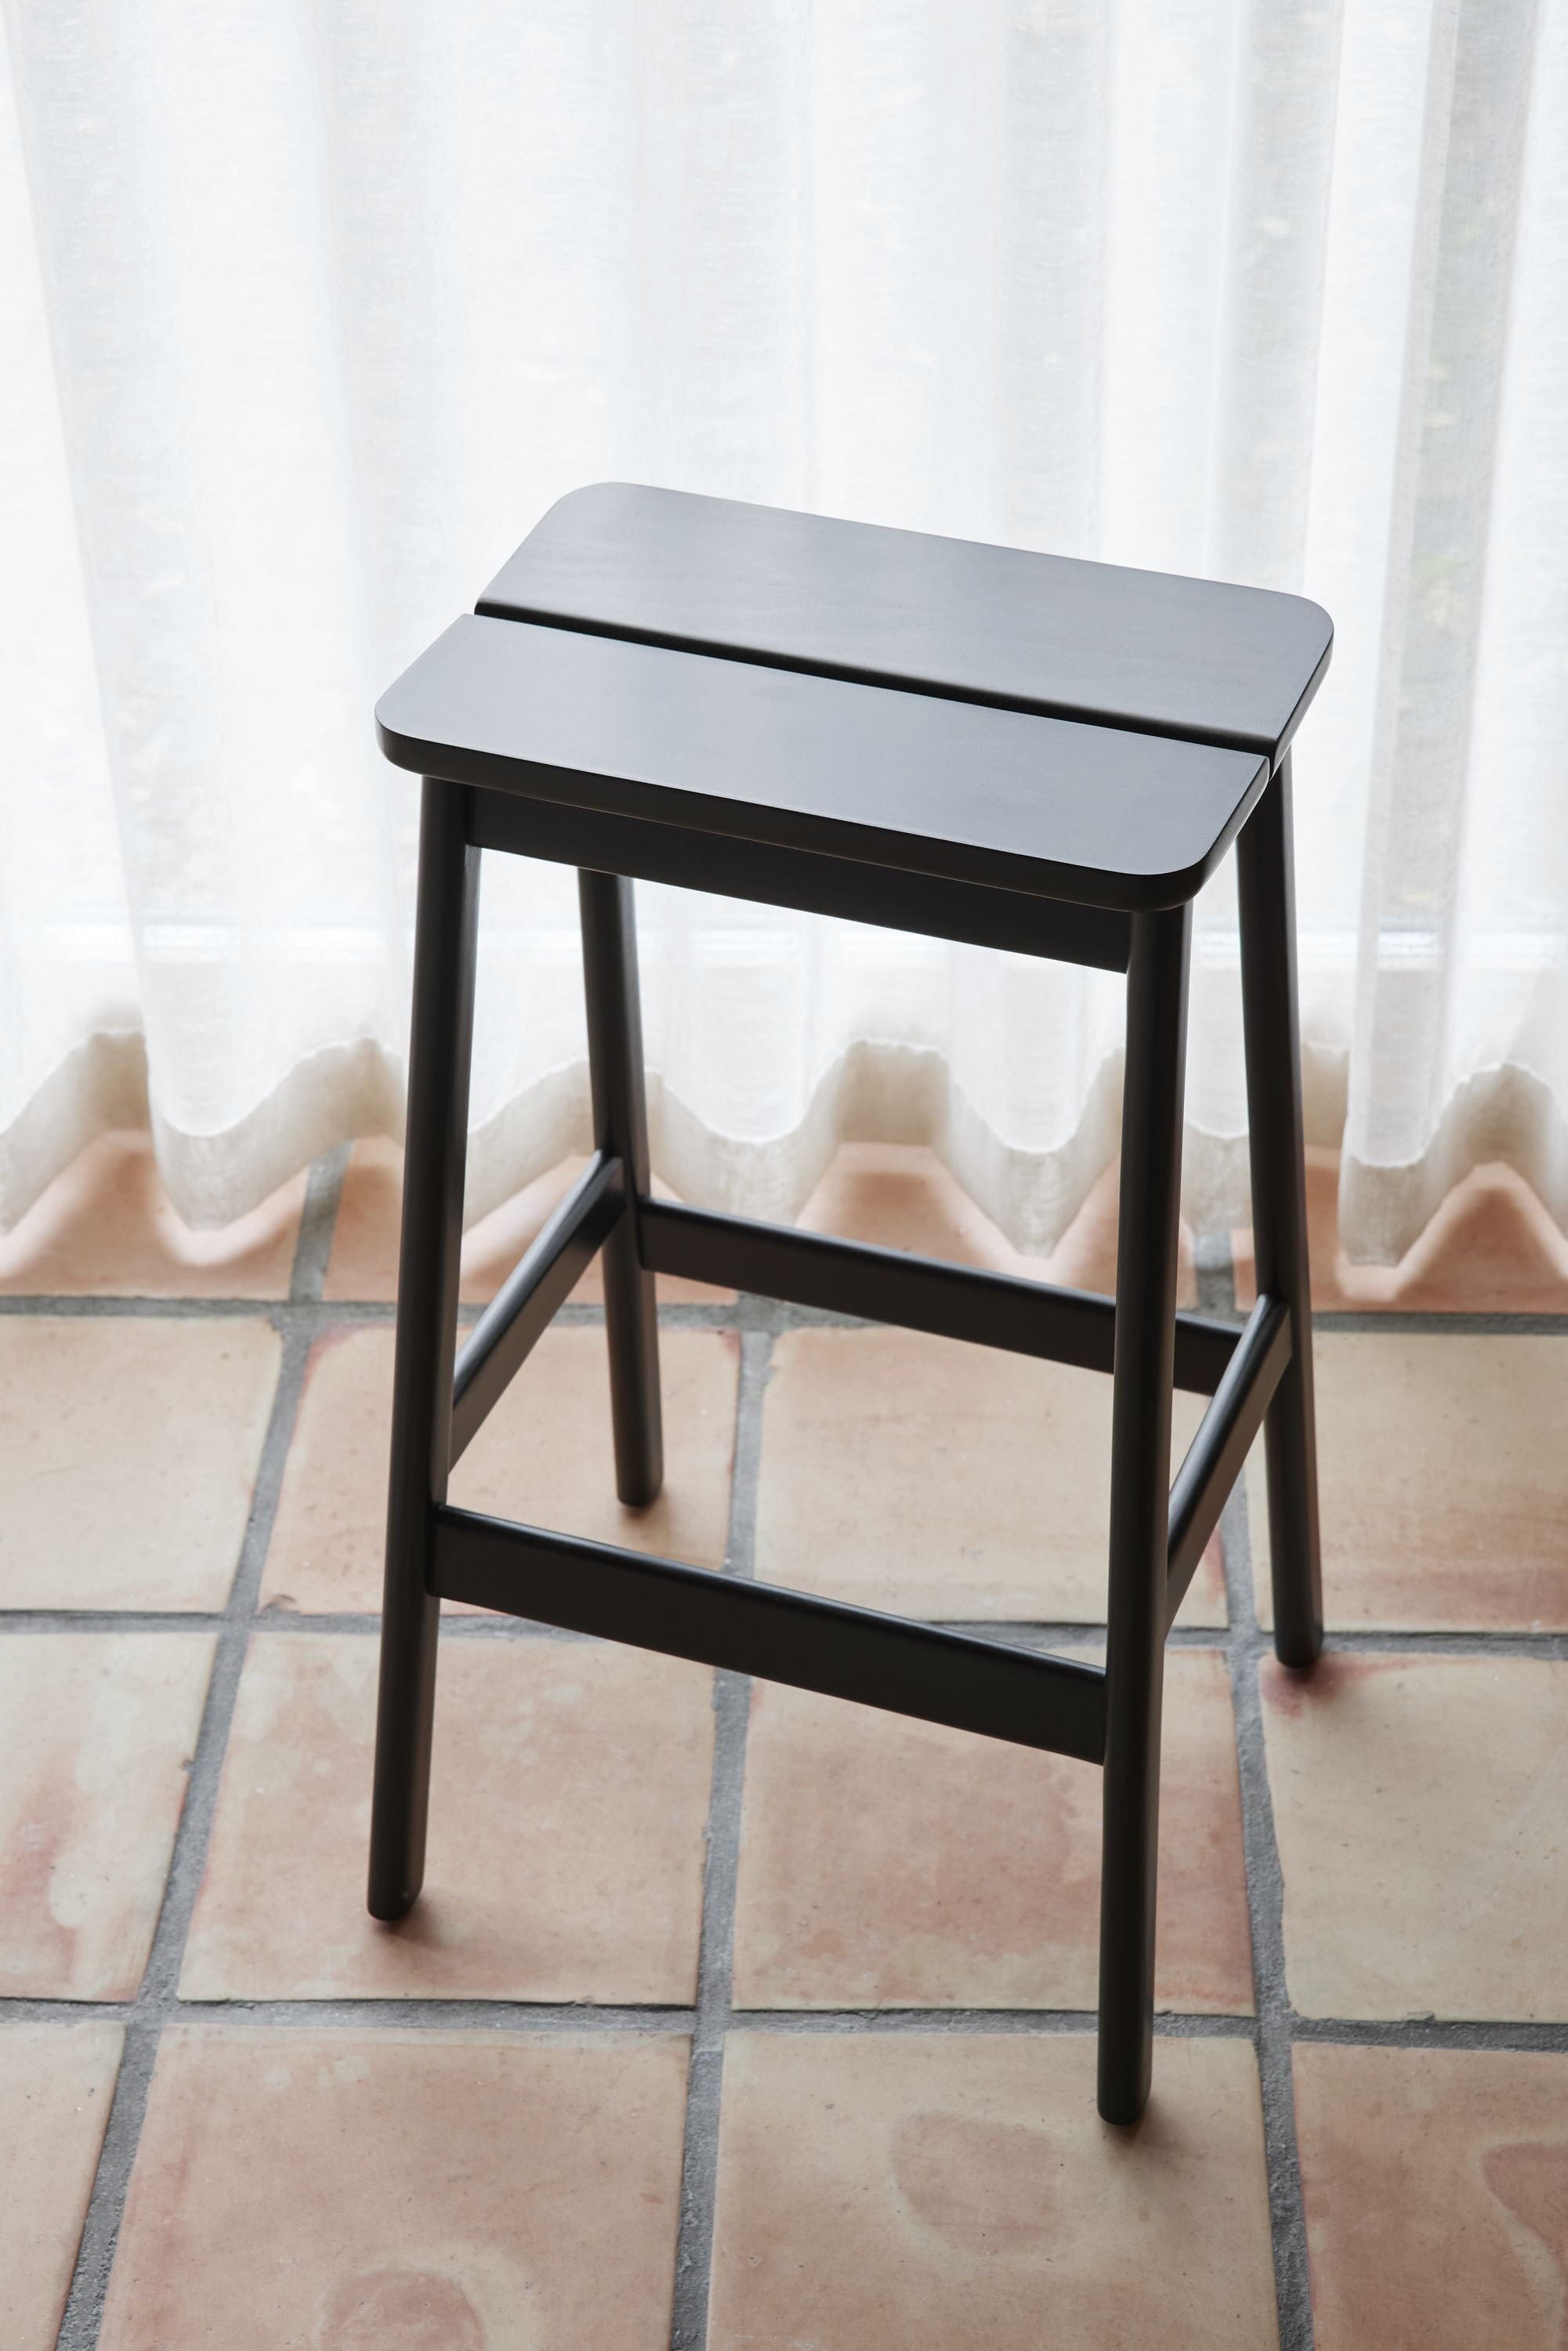 Form & Refine Úhel standardní stolice 75 cm. Buk